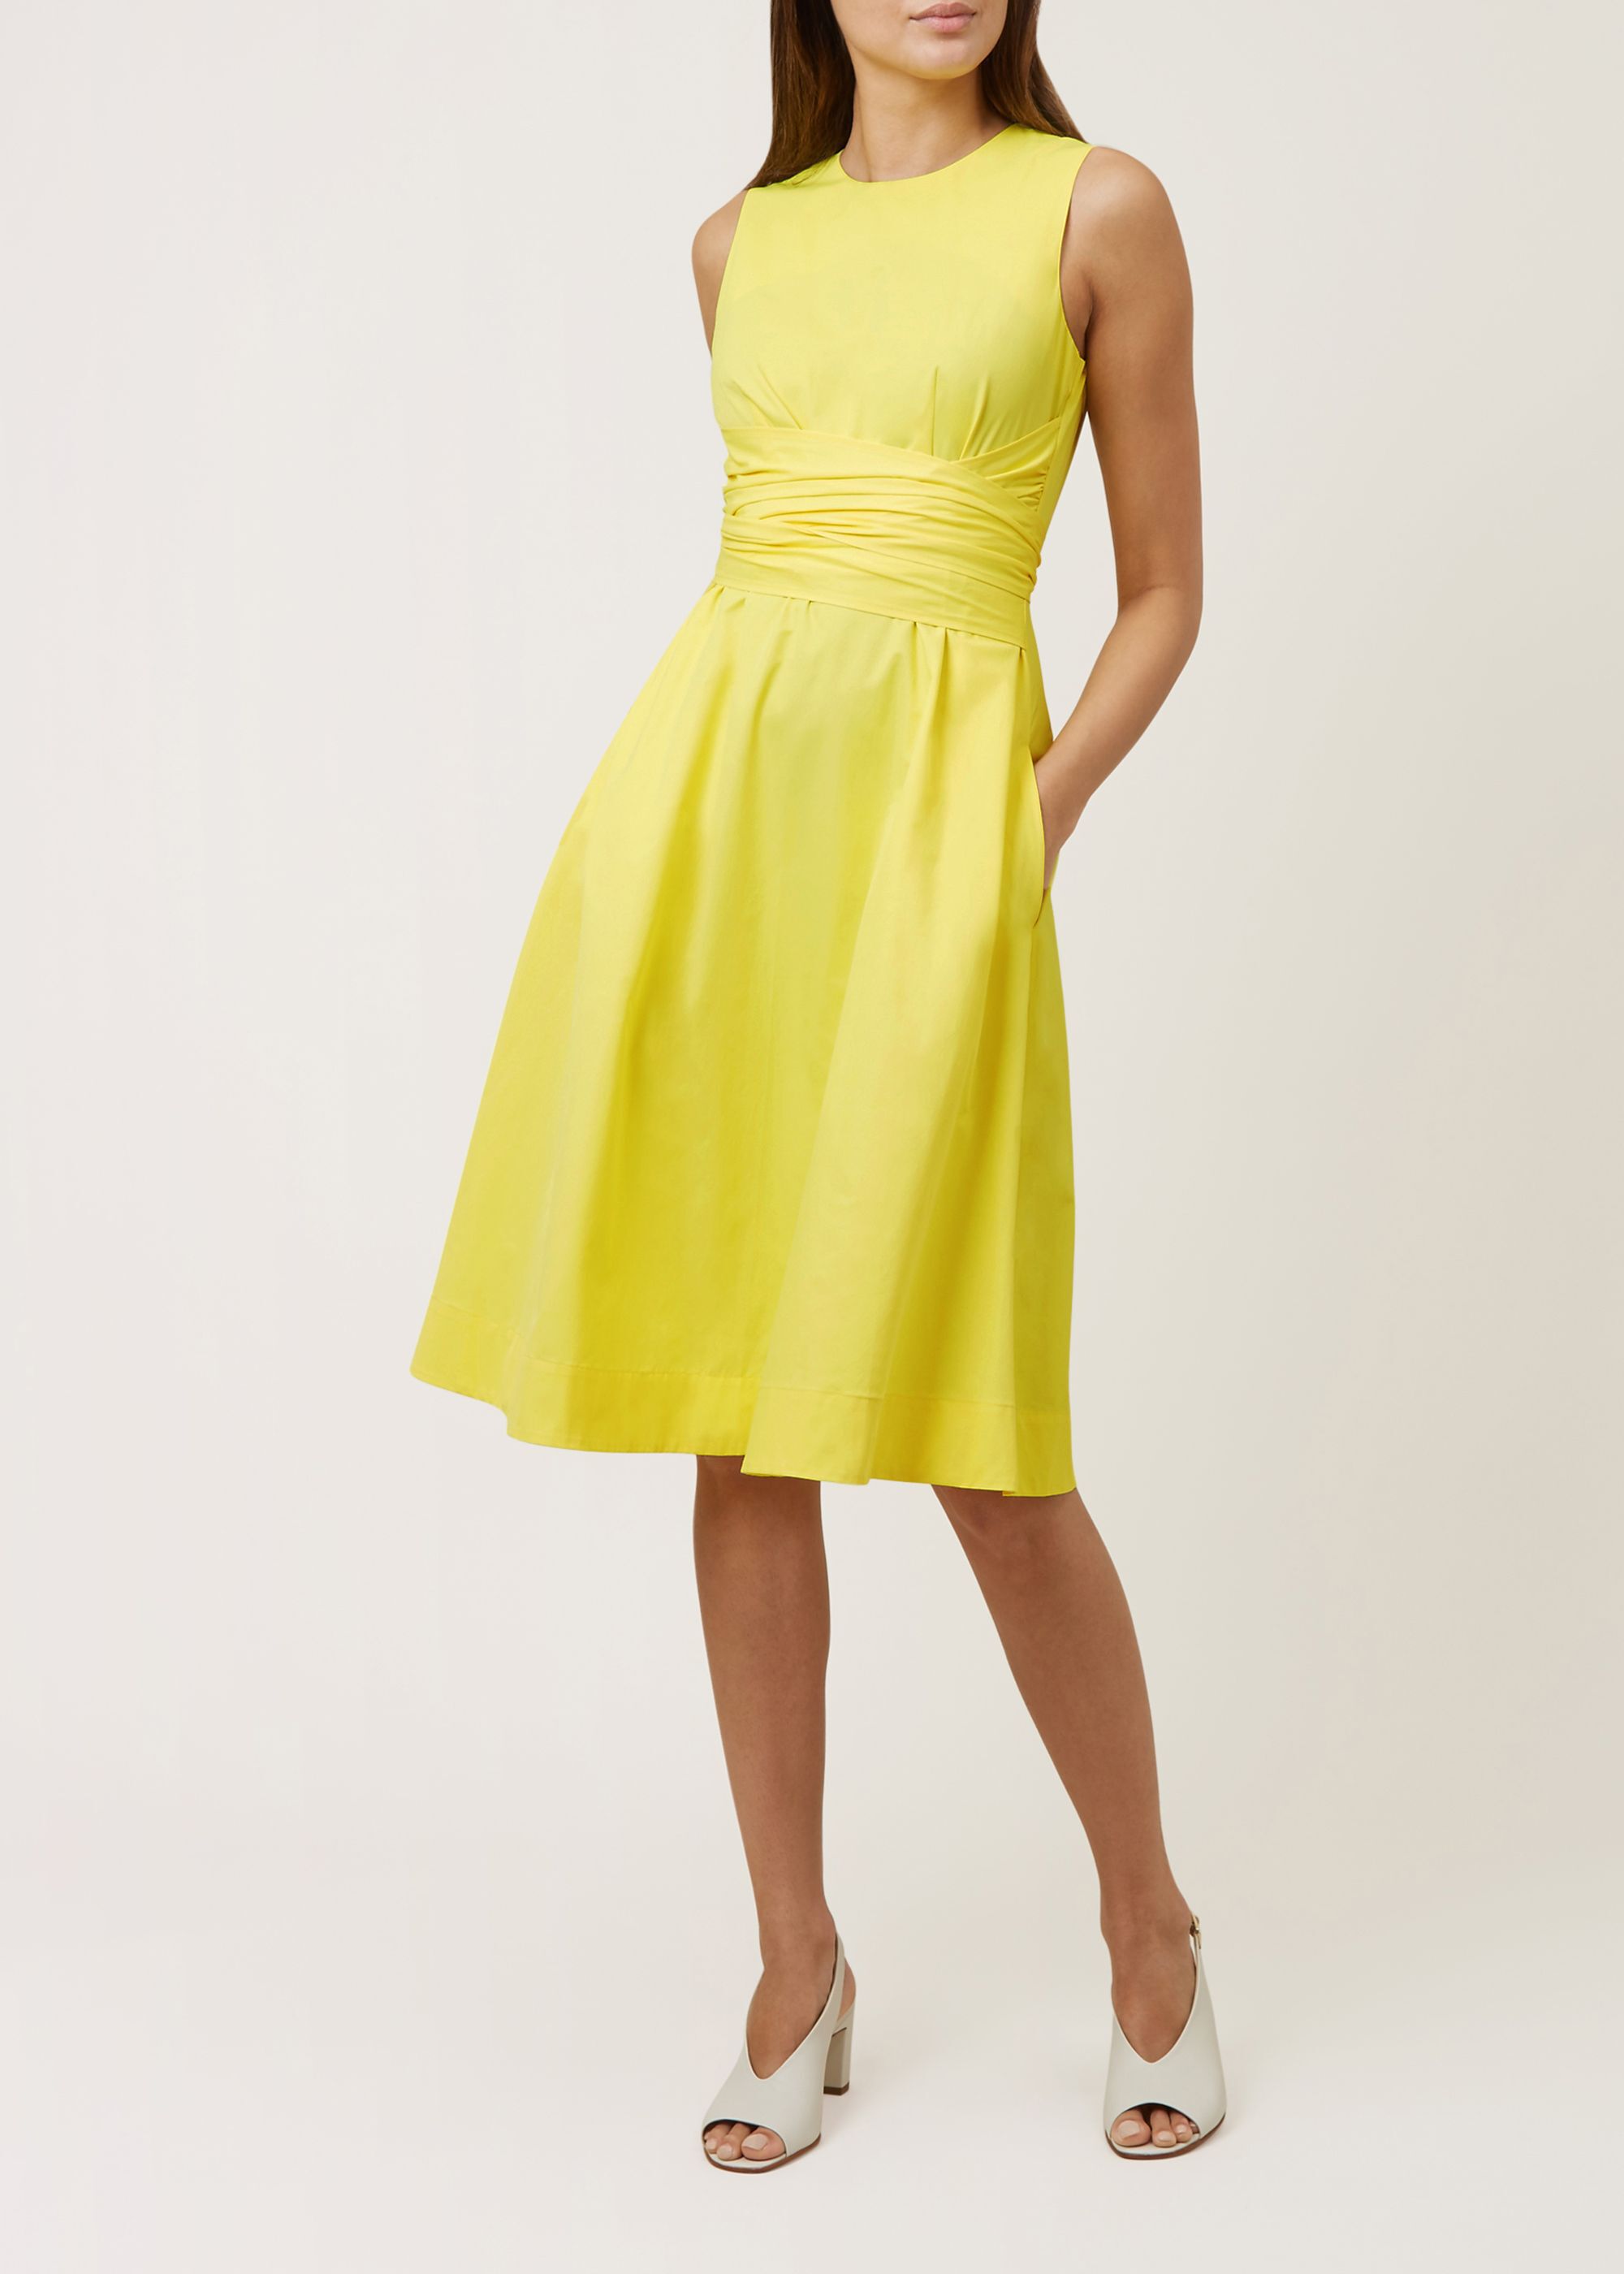 hobbs yellow dress